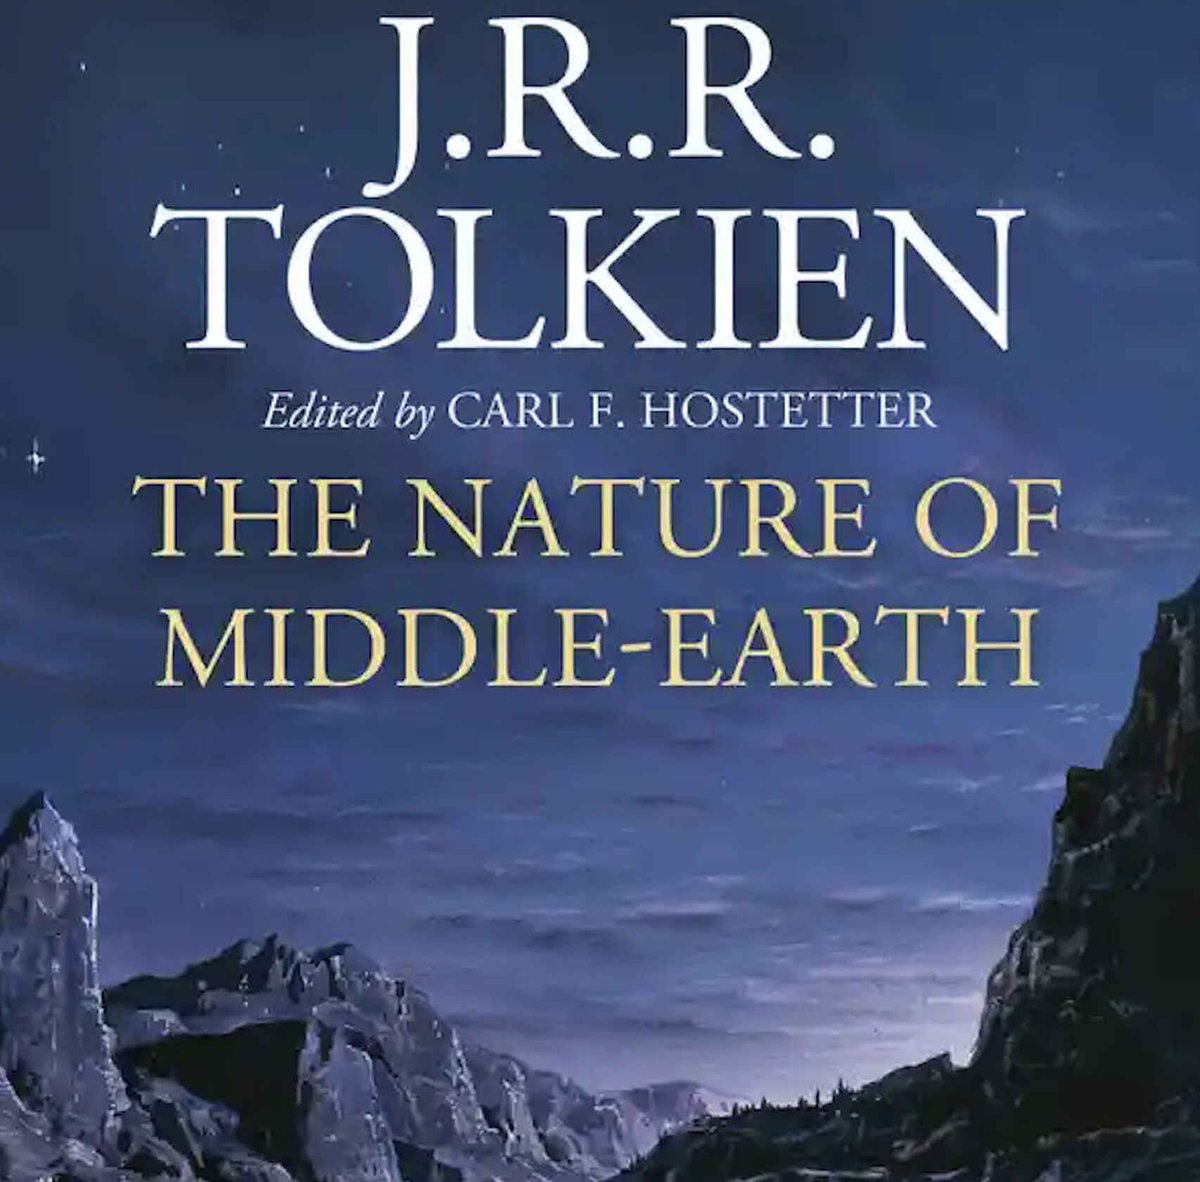 'La naturaleza de la Tierra Media', de #Tolkien, se lanzará a la venta 47 años después del fallecimiento de su autor. El libro tiene previsto publicarse en junio del 2021 gracias a la editorial @HarperCollins y recoge ensayos y textos inéditos.#fantasia
i.mtr.cool/fyipldltnm